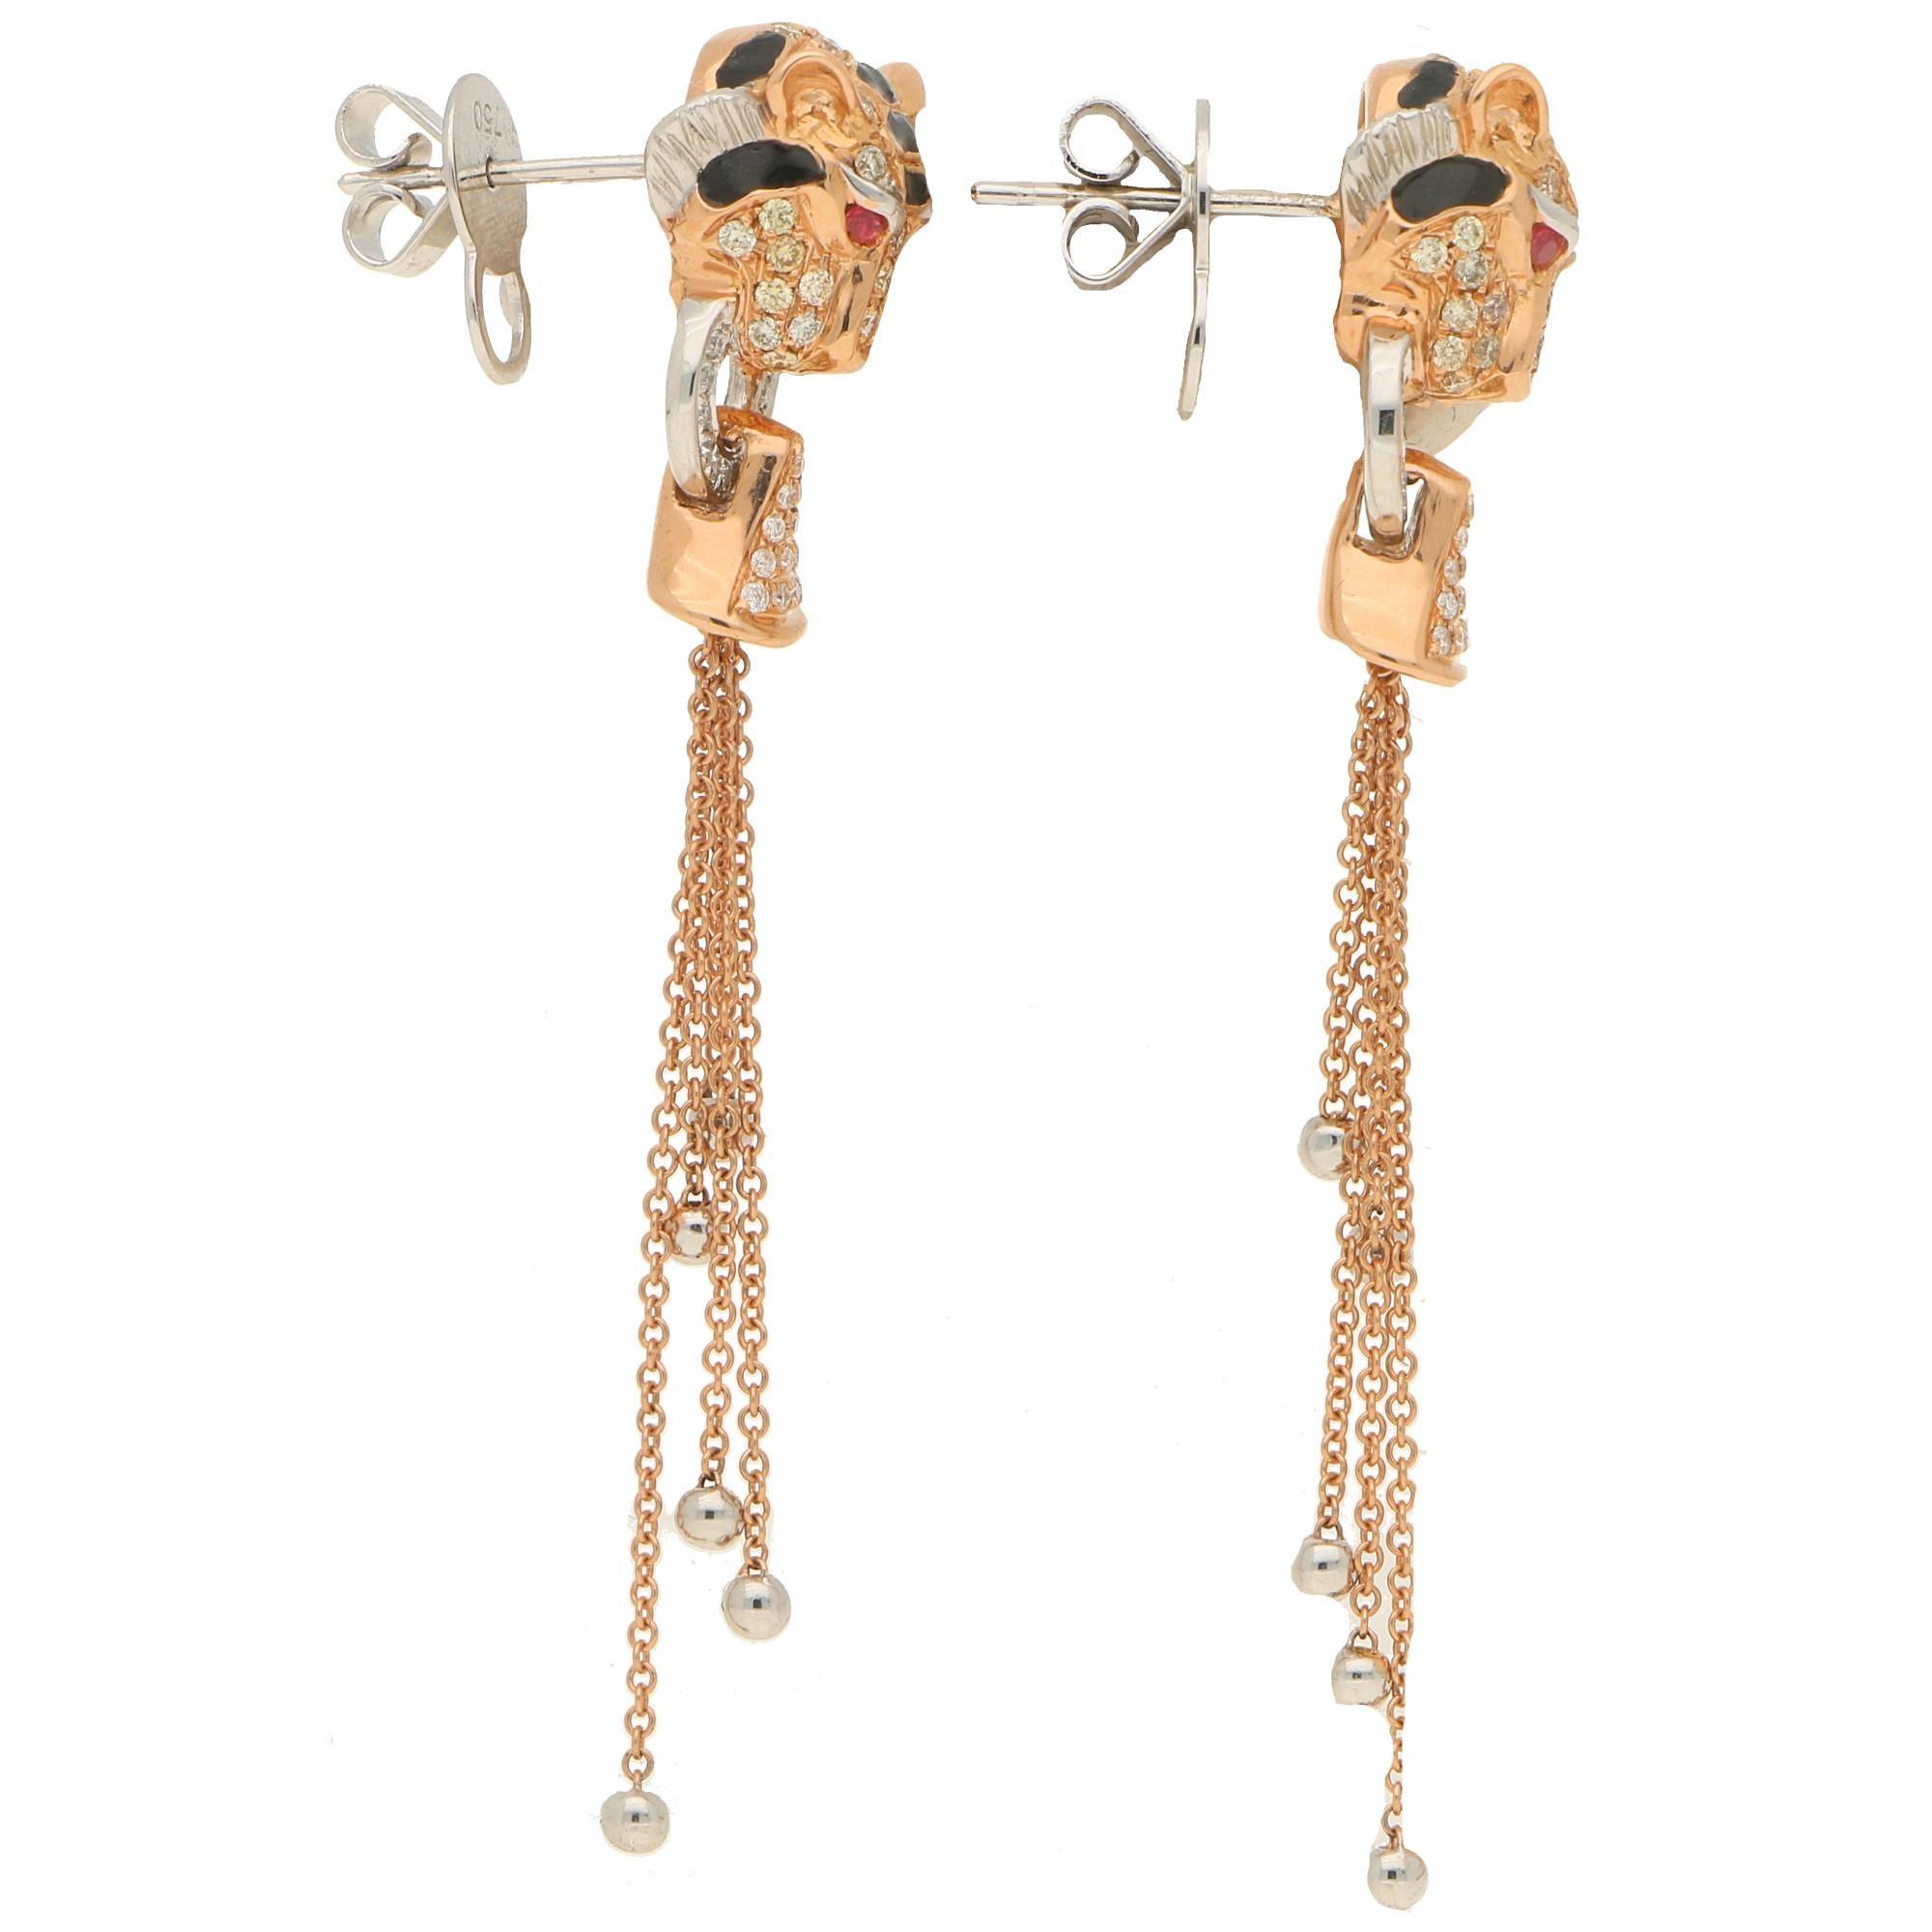 Women's or Men's Diamond, Enamel and Ruby Tiger Head Earrings Set in 18k Rose Gold